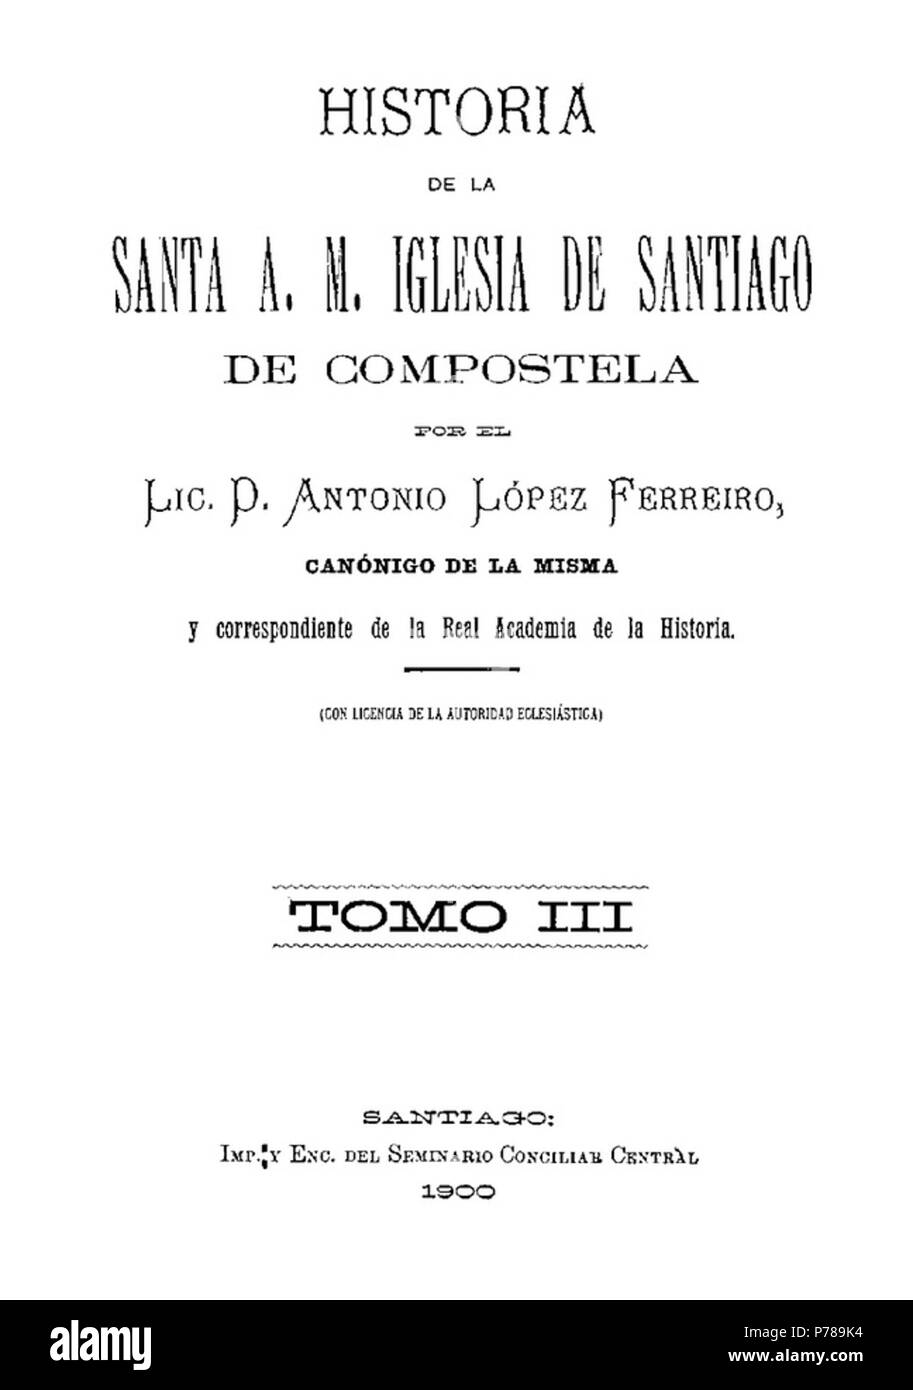 37 Historia de la Santa A. M. Iglesia de Santiago de Compostela por el Lic. D. Antonio López Ferreiro, canónigo de la misma, 1900, Tomo III Foto de stock